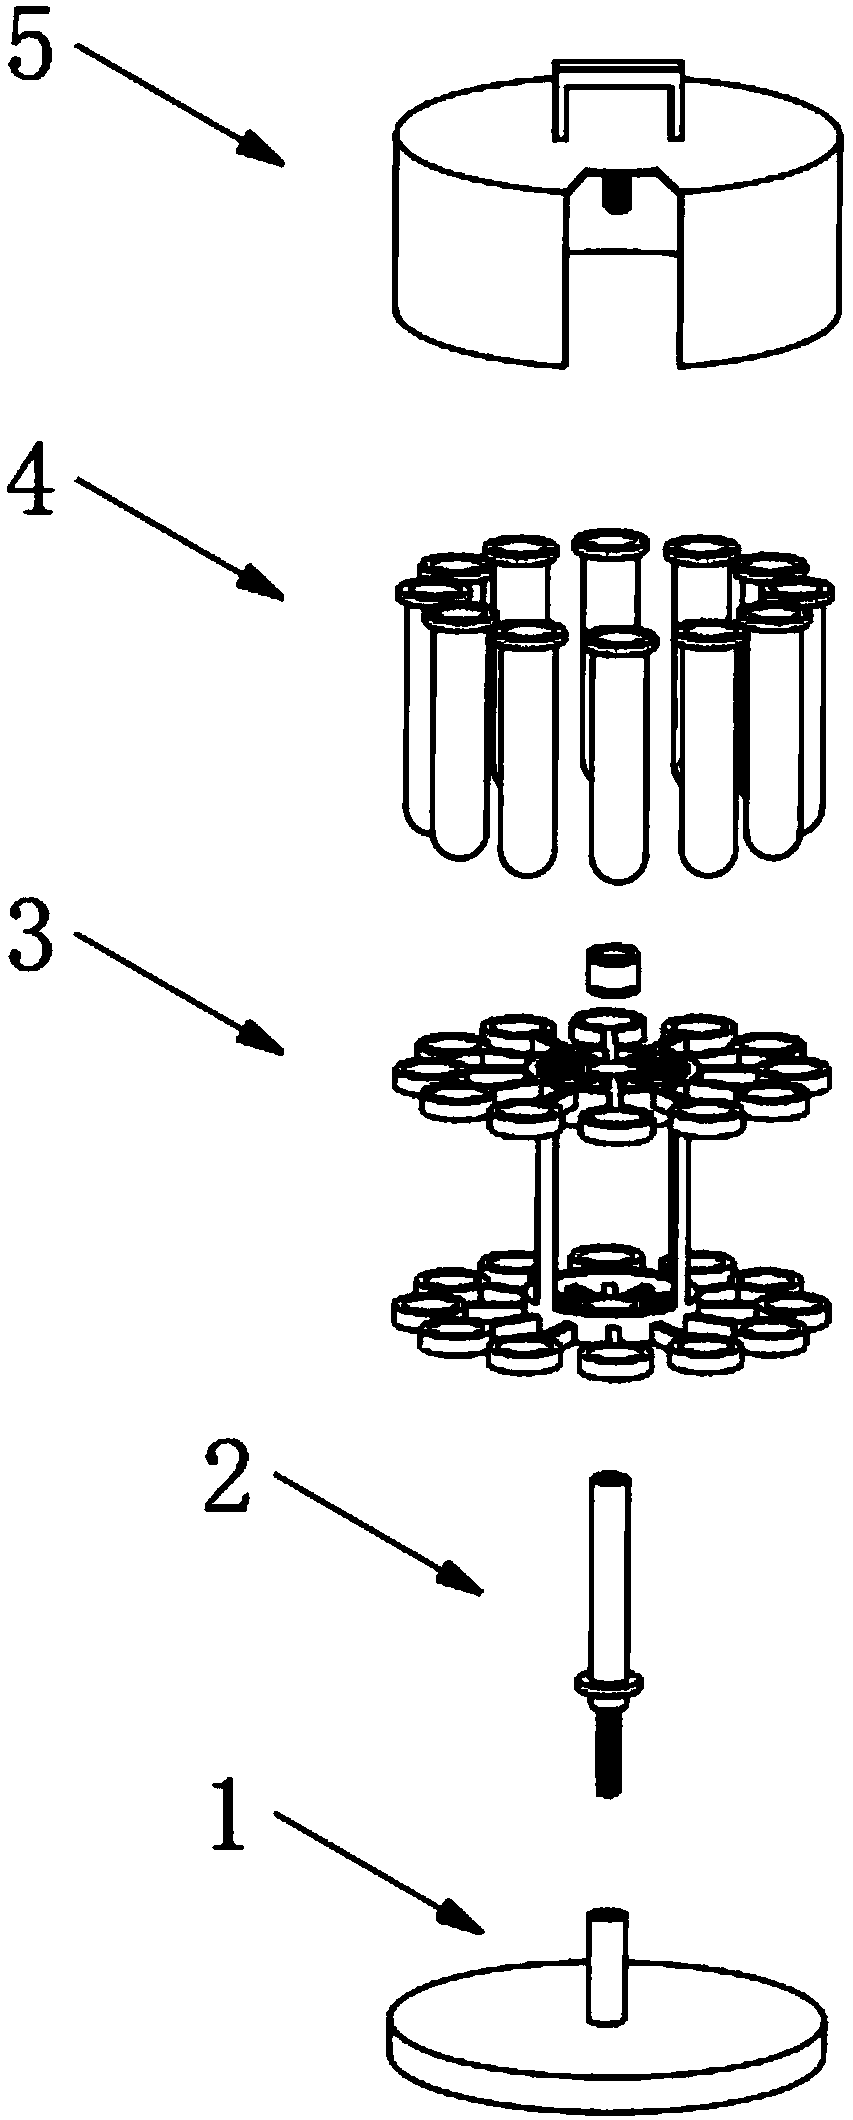 Rotary type test tube rack for biological technique development